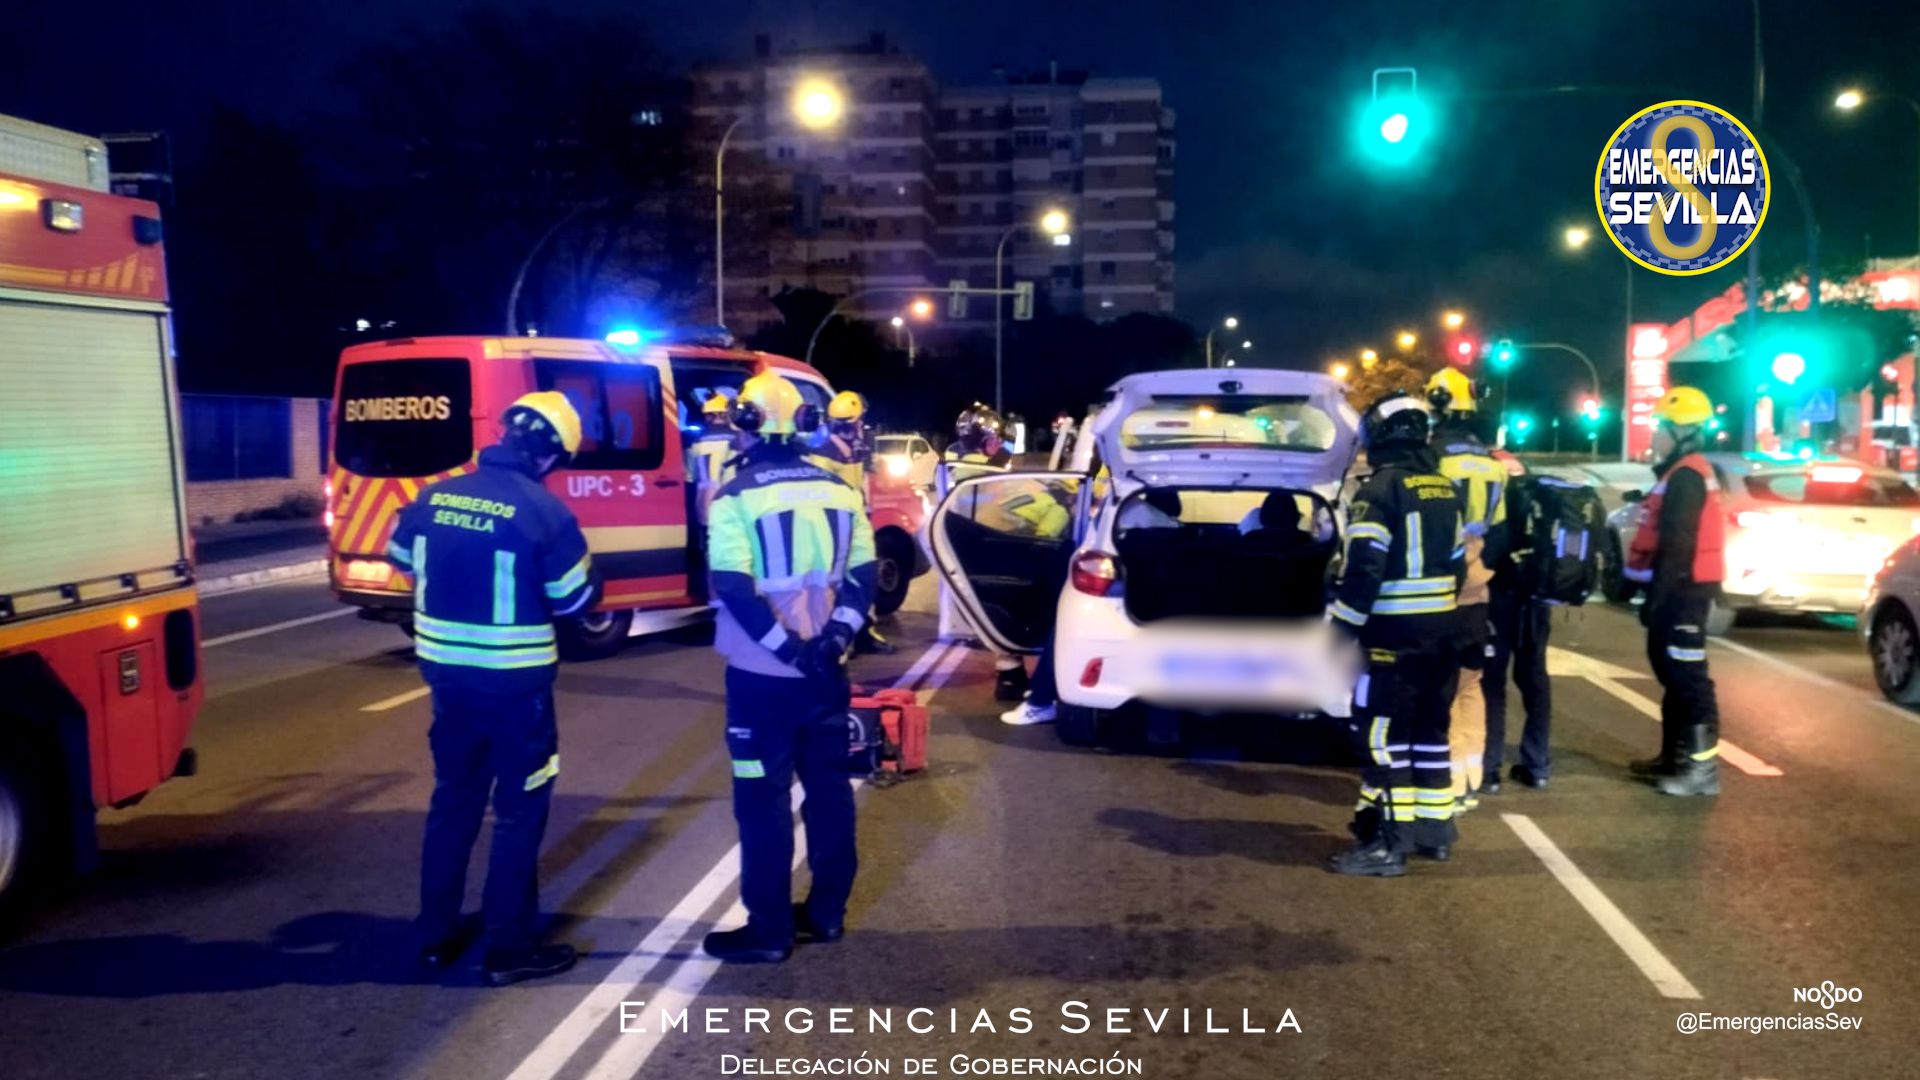 Imagen del accidente ocurrido en Sevilla.